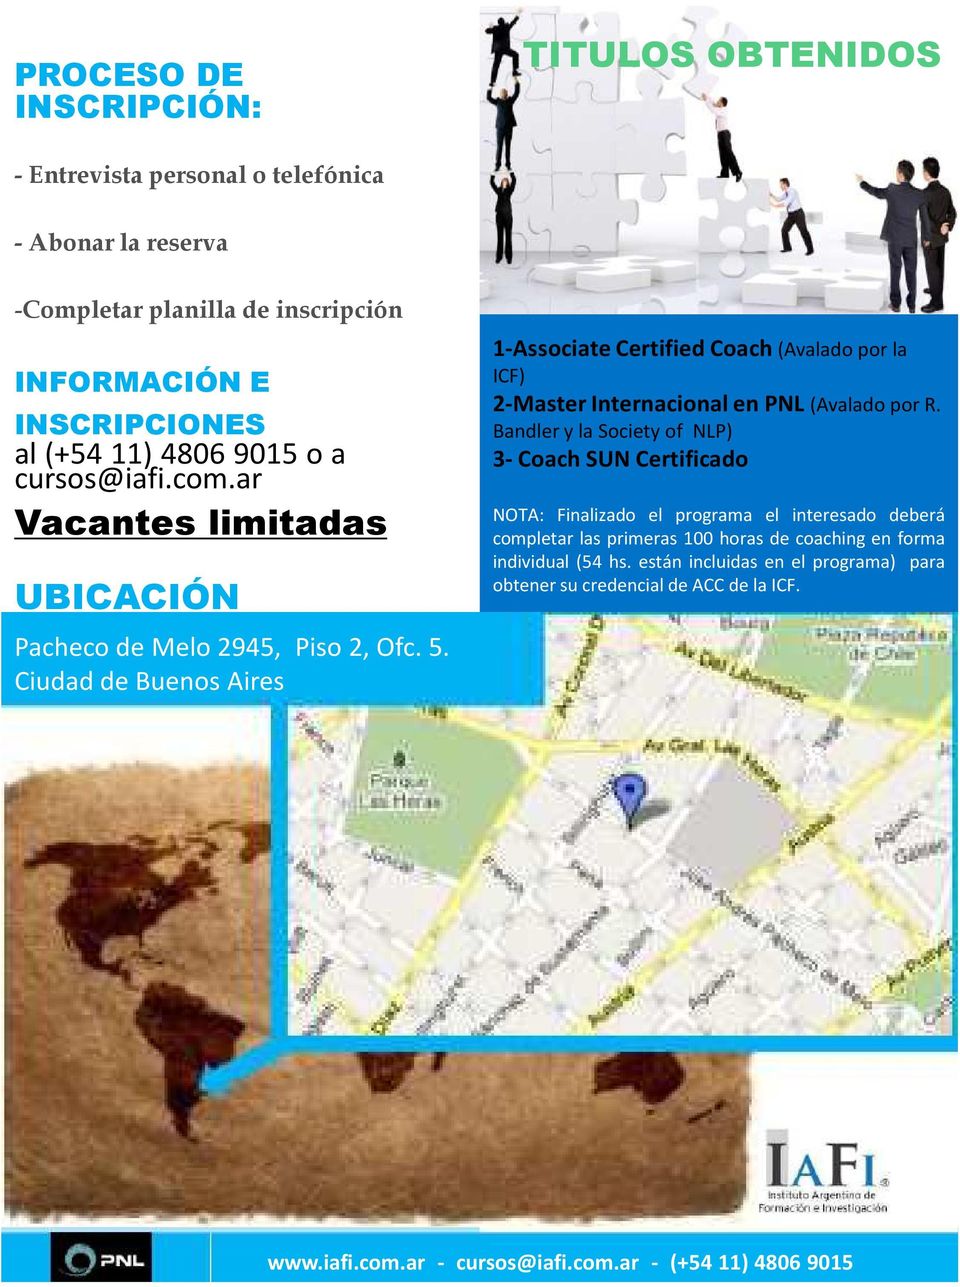 Ciudad de Buenos Aires 1-Associate Certified Coach (Avalado por la ICF) 2-Master Internacional en PNL (Avalado por R.